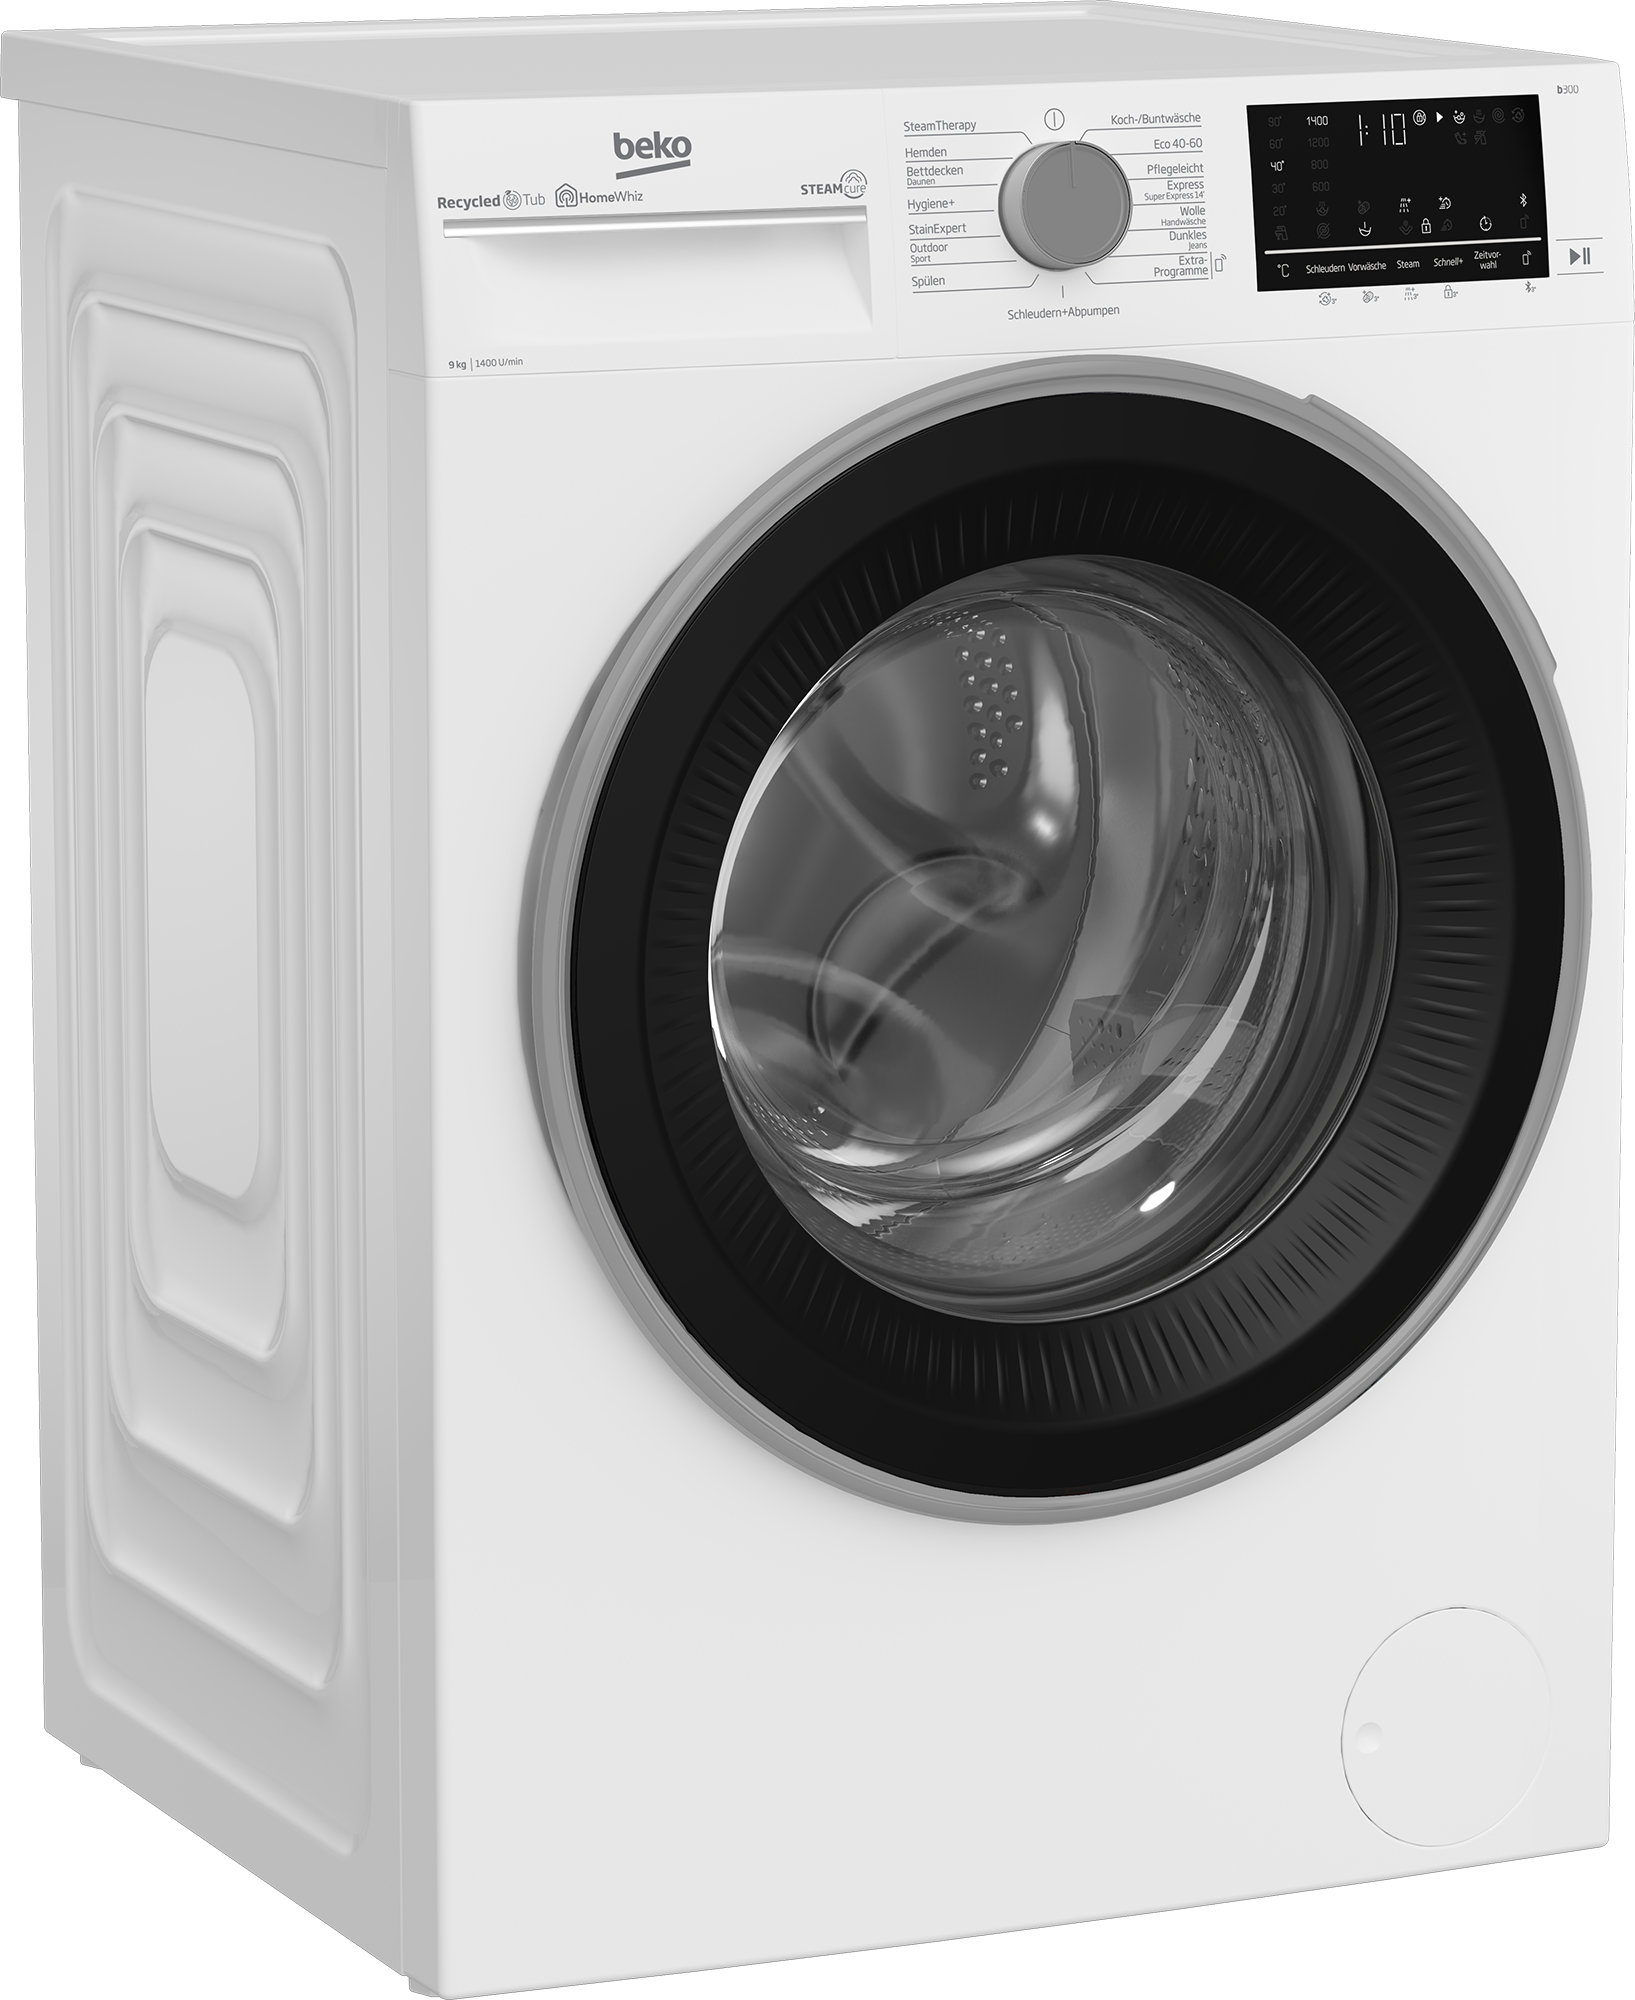 Waschmaschine, allergenfrei online kaufen - 1400 b300, kg, SteamCure B3WFU59415W2, BEKO 9 U/min, 99%